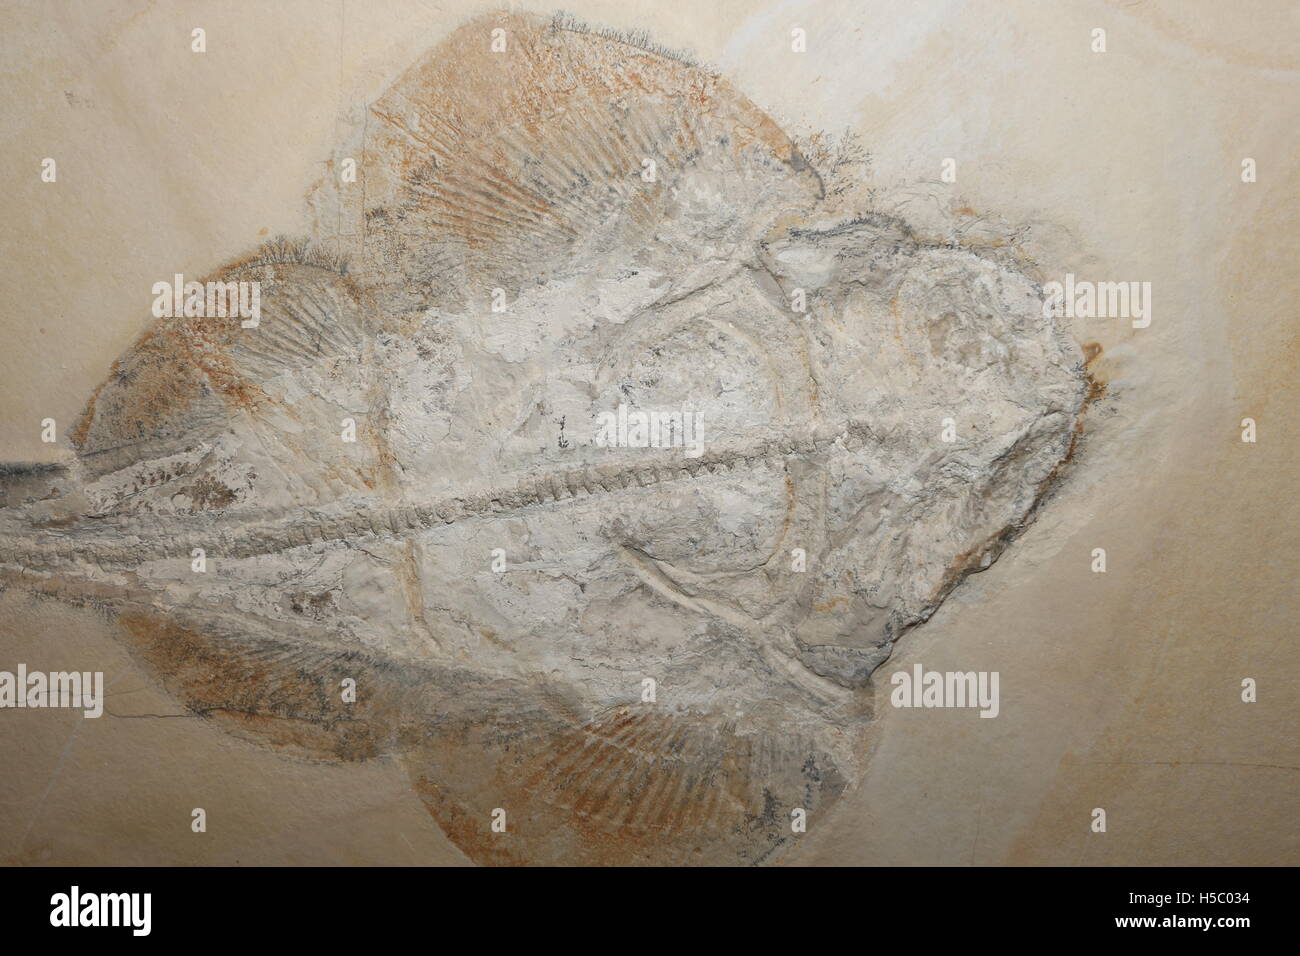 Fossil Guitarfish, Rhinobatus sp., Late Jurassic, Germany Stock Photo